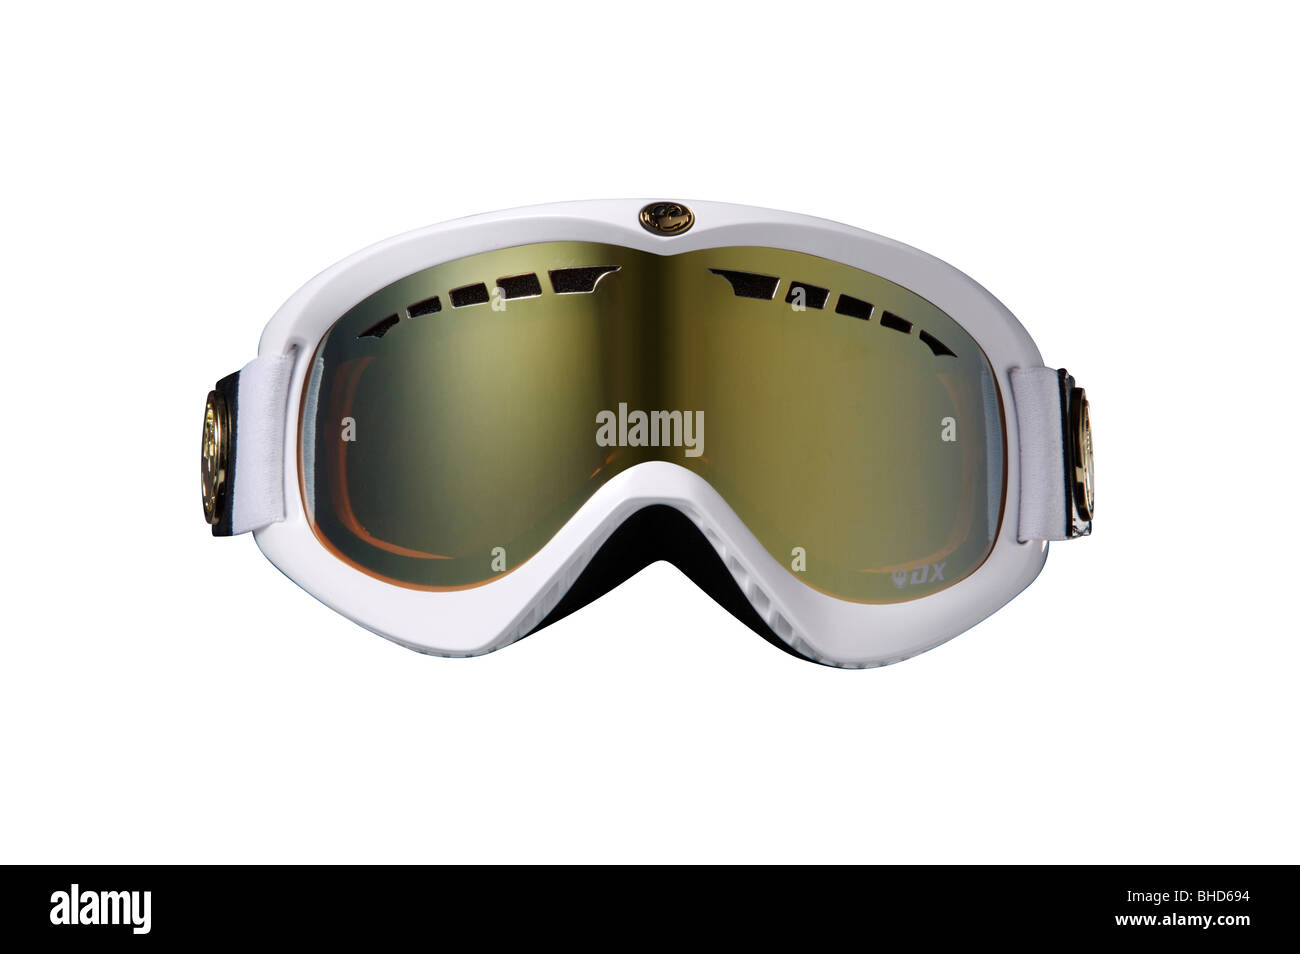 ski, mask, glasses, cutout, white, goggles Stock Photo